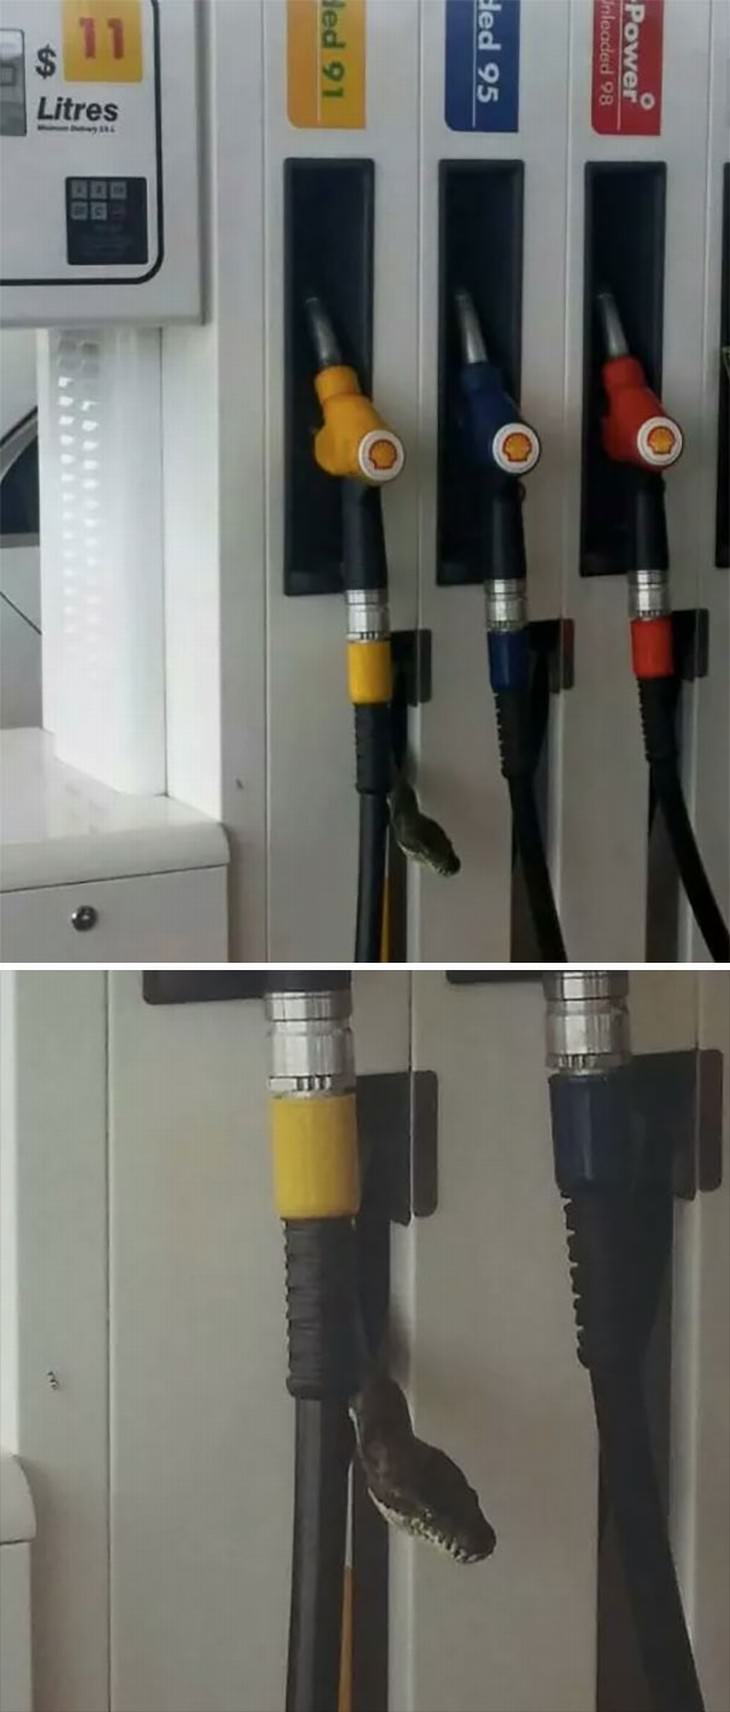 australian nature gas station snake on fuel dispenser